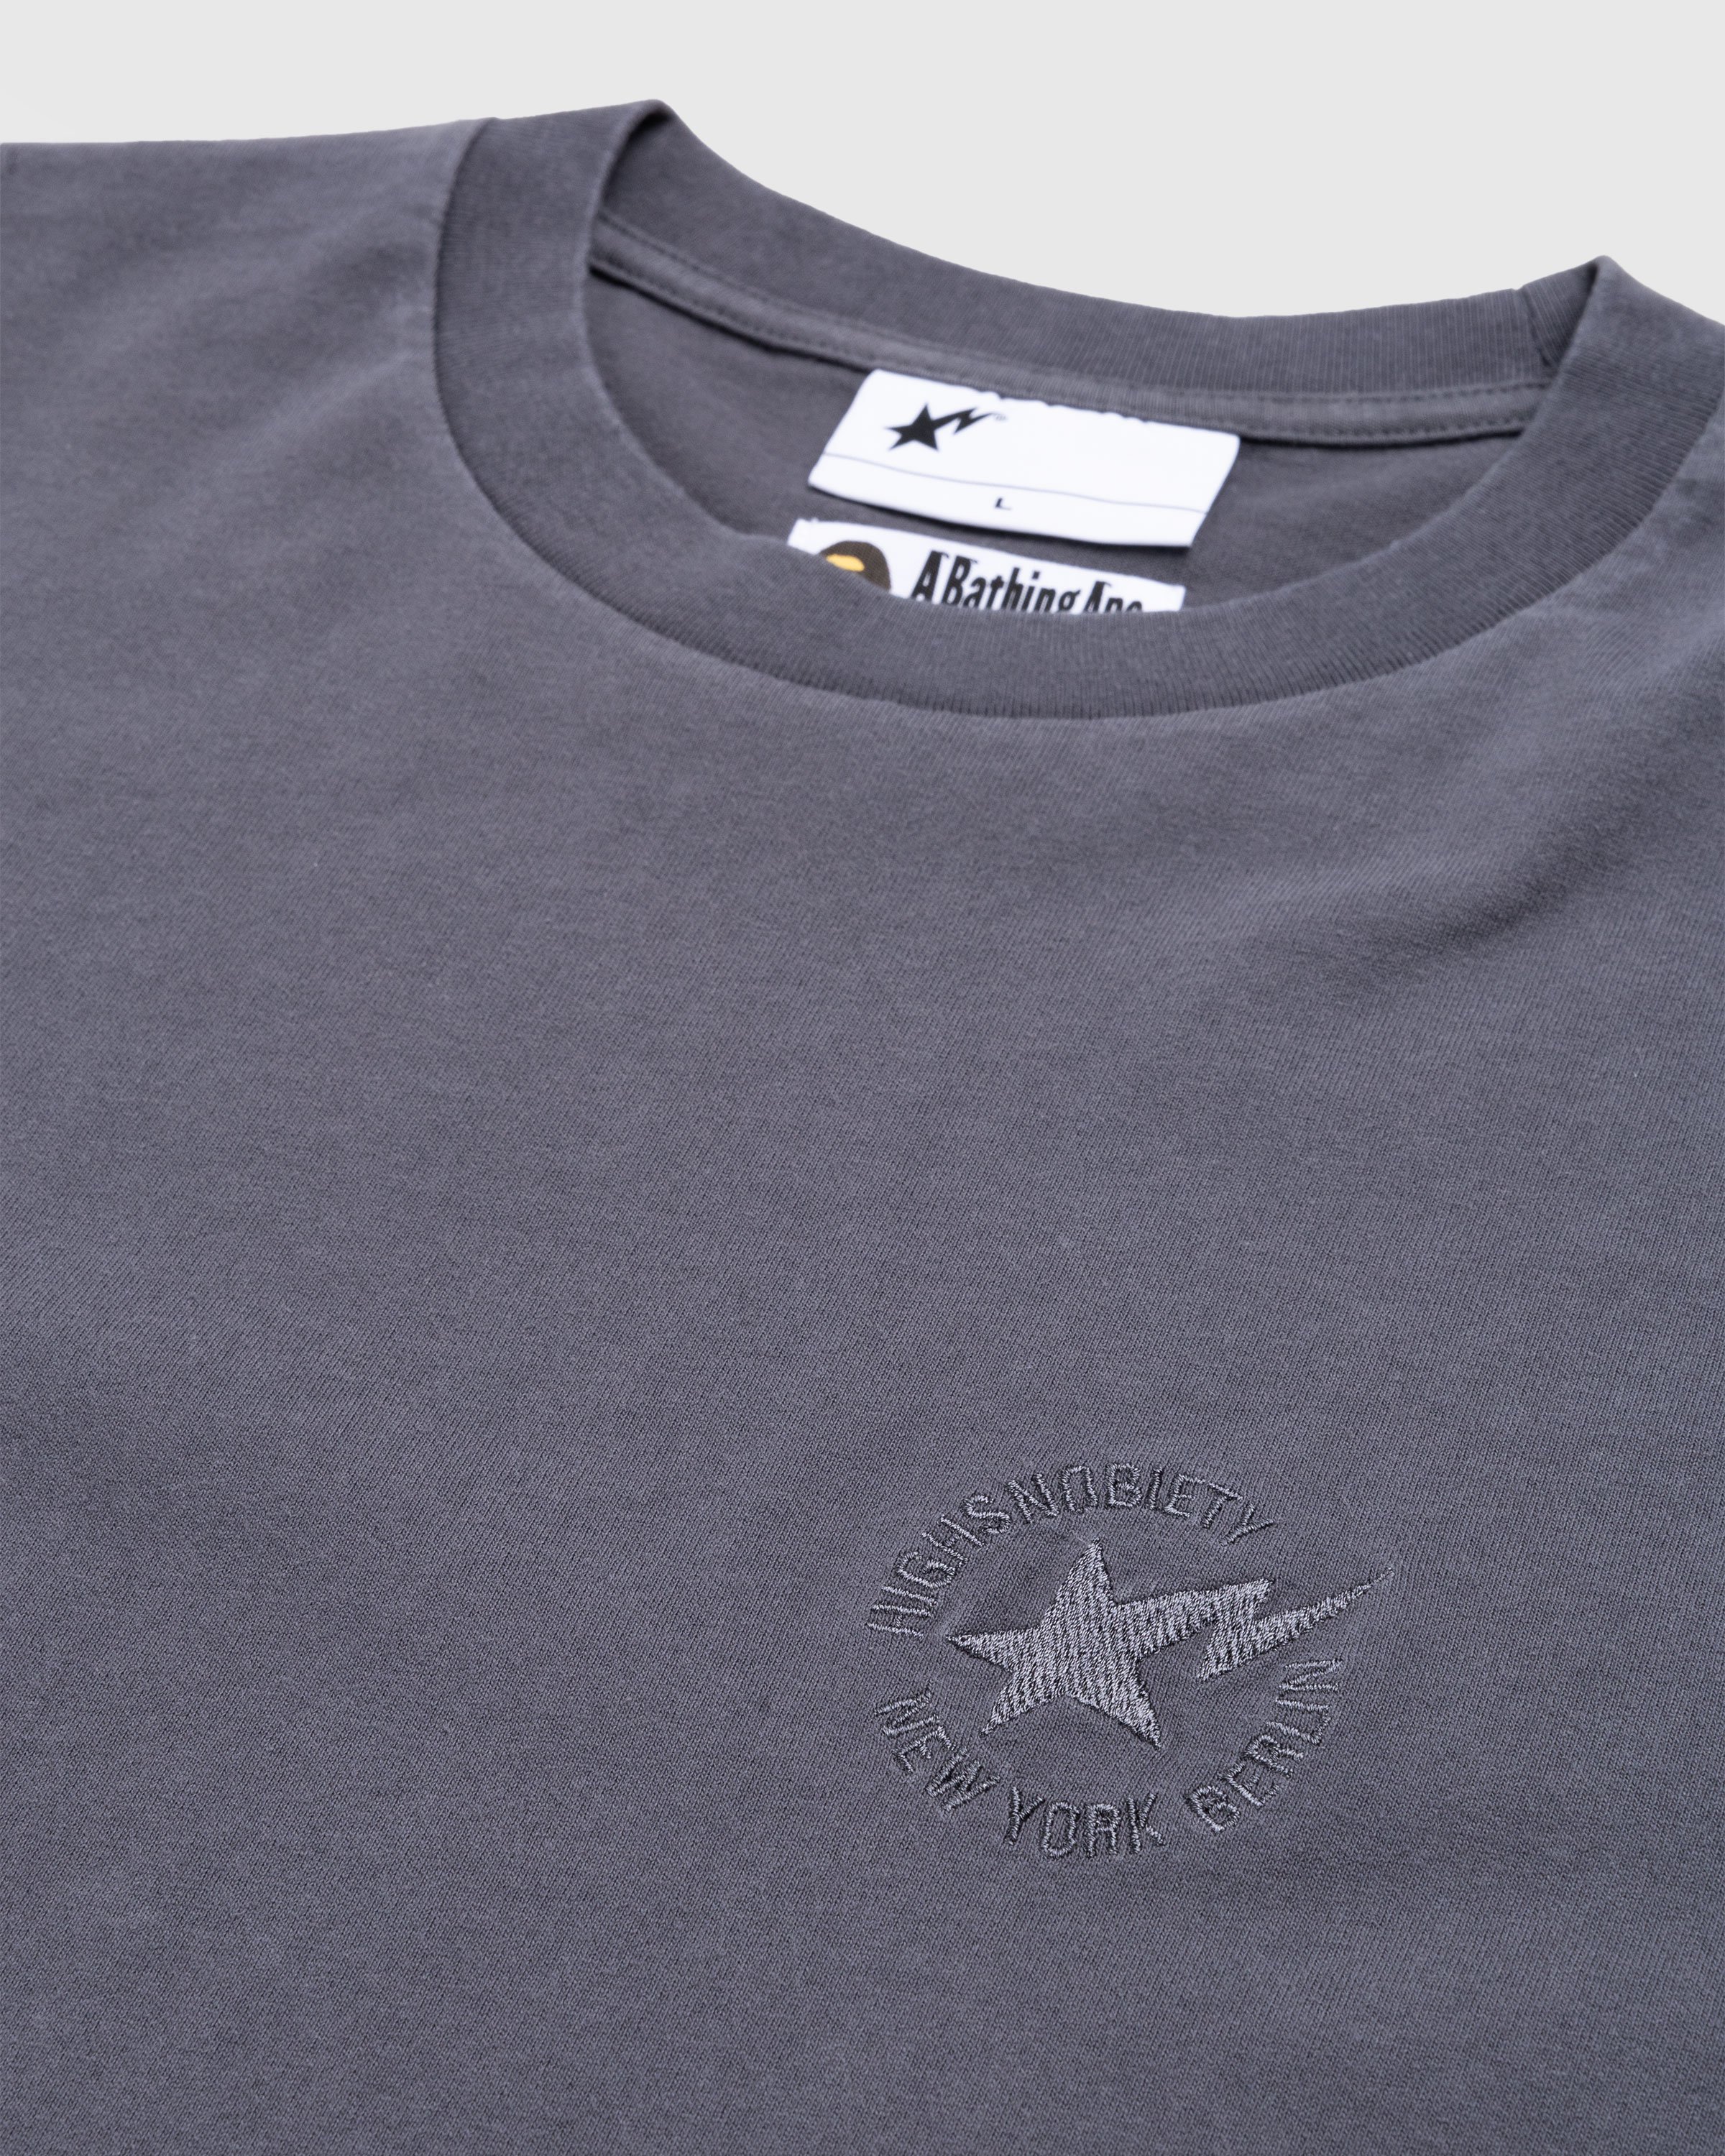 BAPE x Highsnobiety - Heavy Washed T-Shirt Charcoal - Clothing - Grey - Image 4